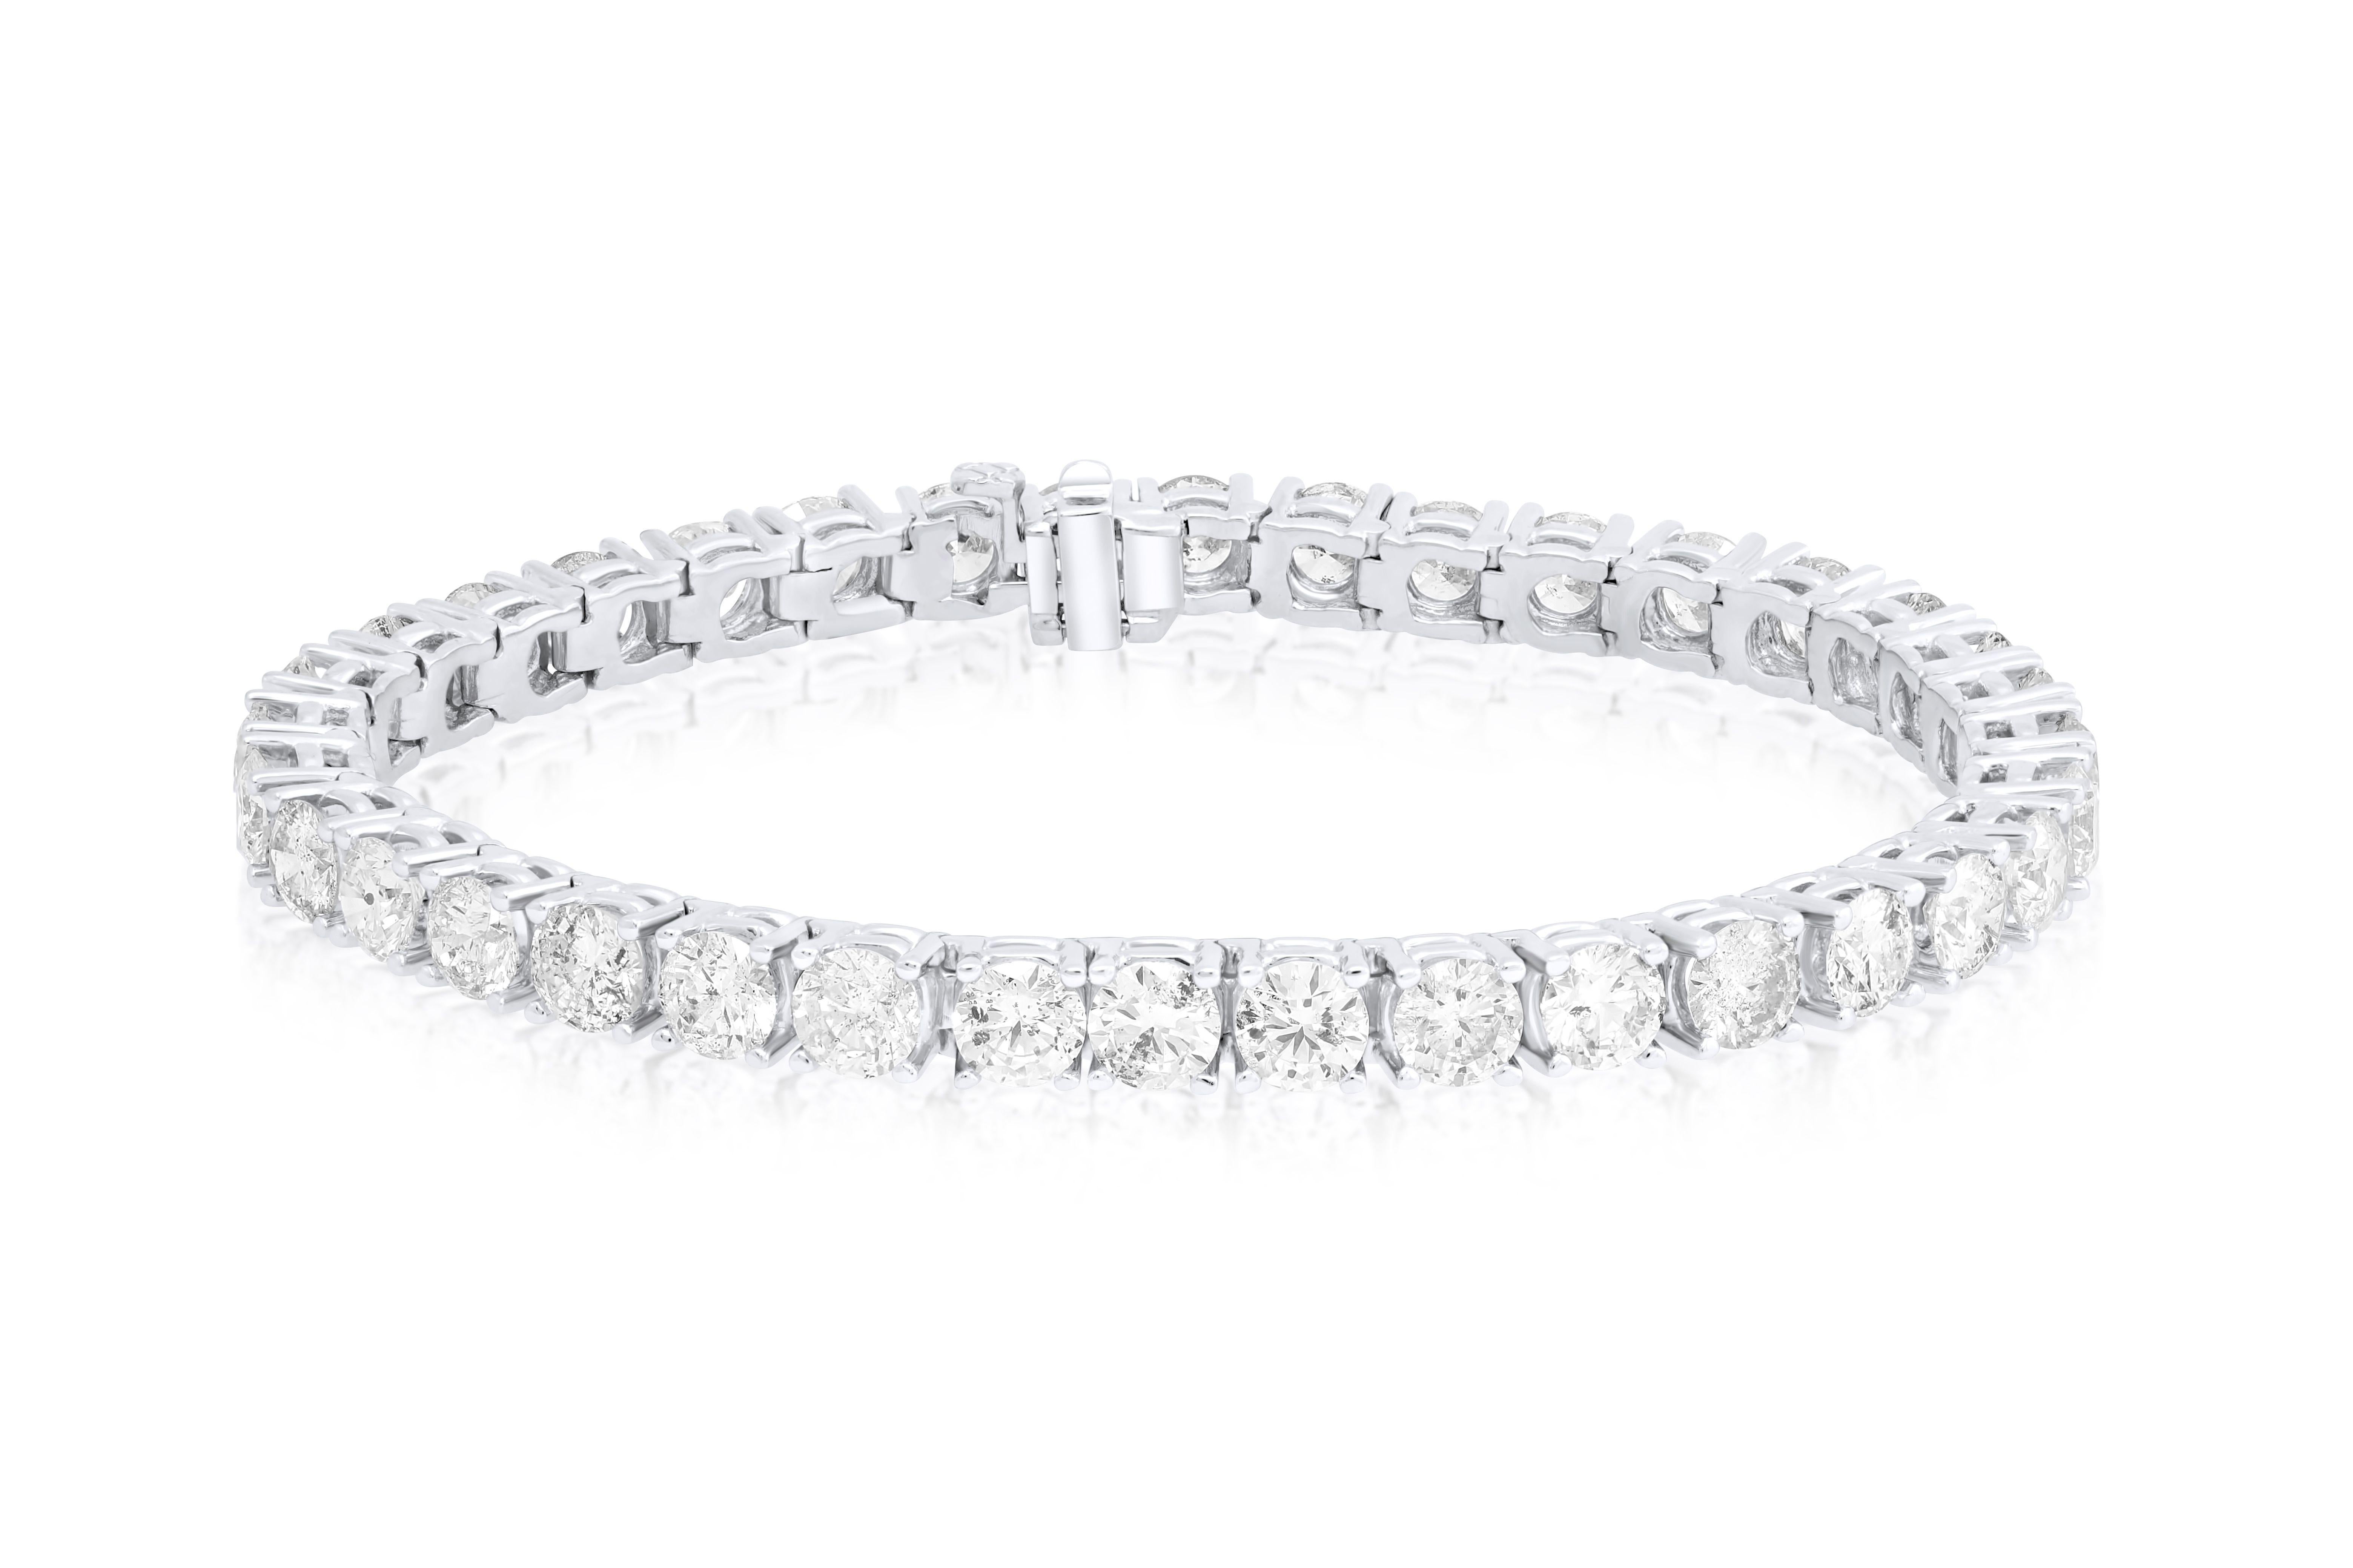 18 kt white gold 4 prong diamond tennis bracelet  15.00 cts round diamonds 0.40 carat each diamond 36 stones FG color SI clarity.  Excellent Cut.